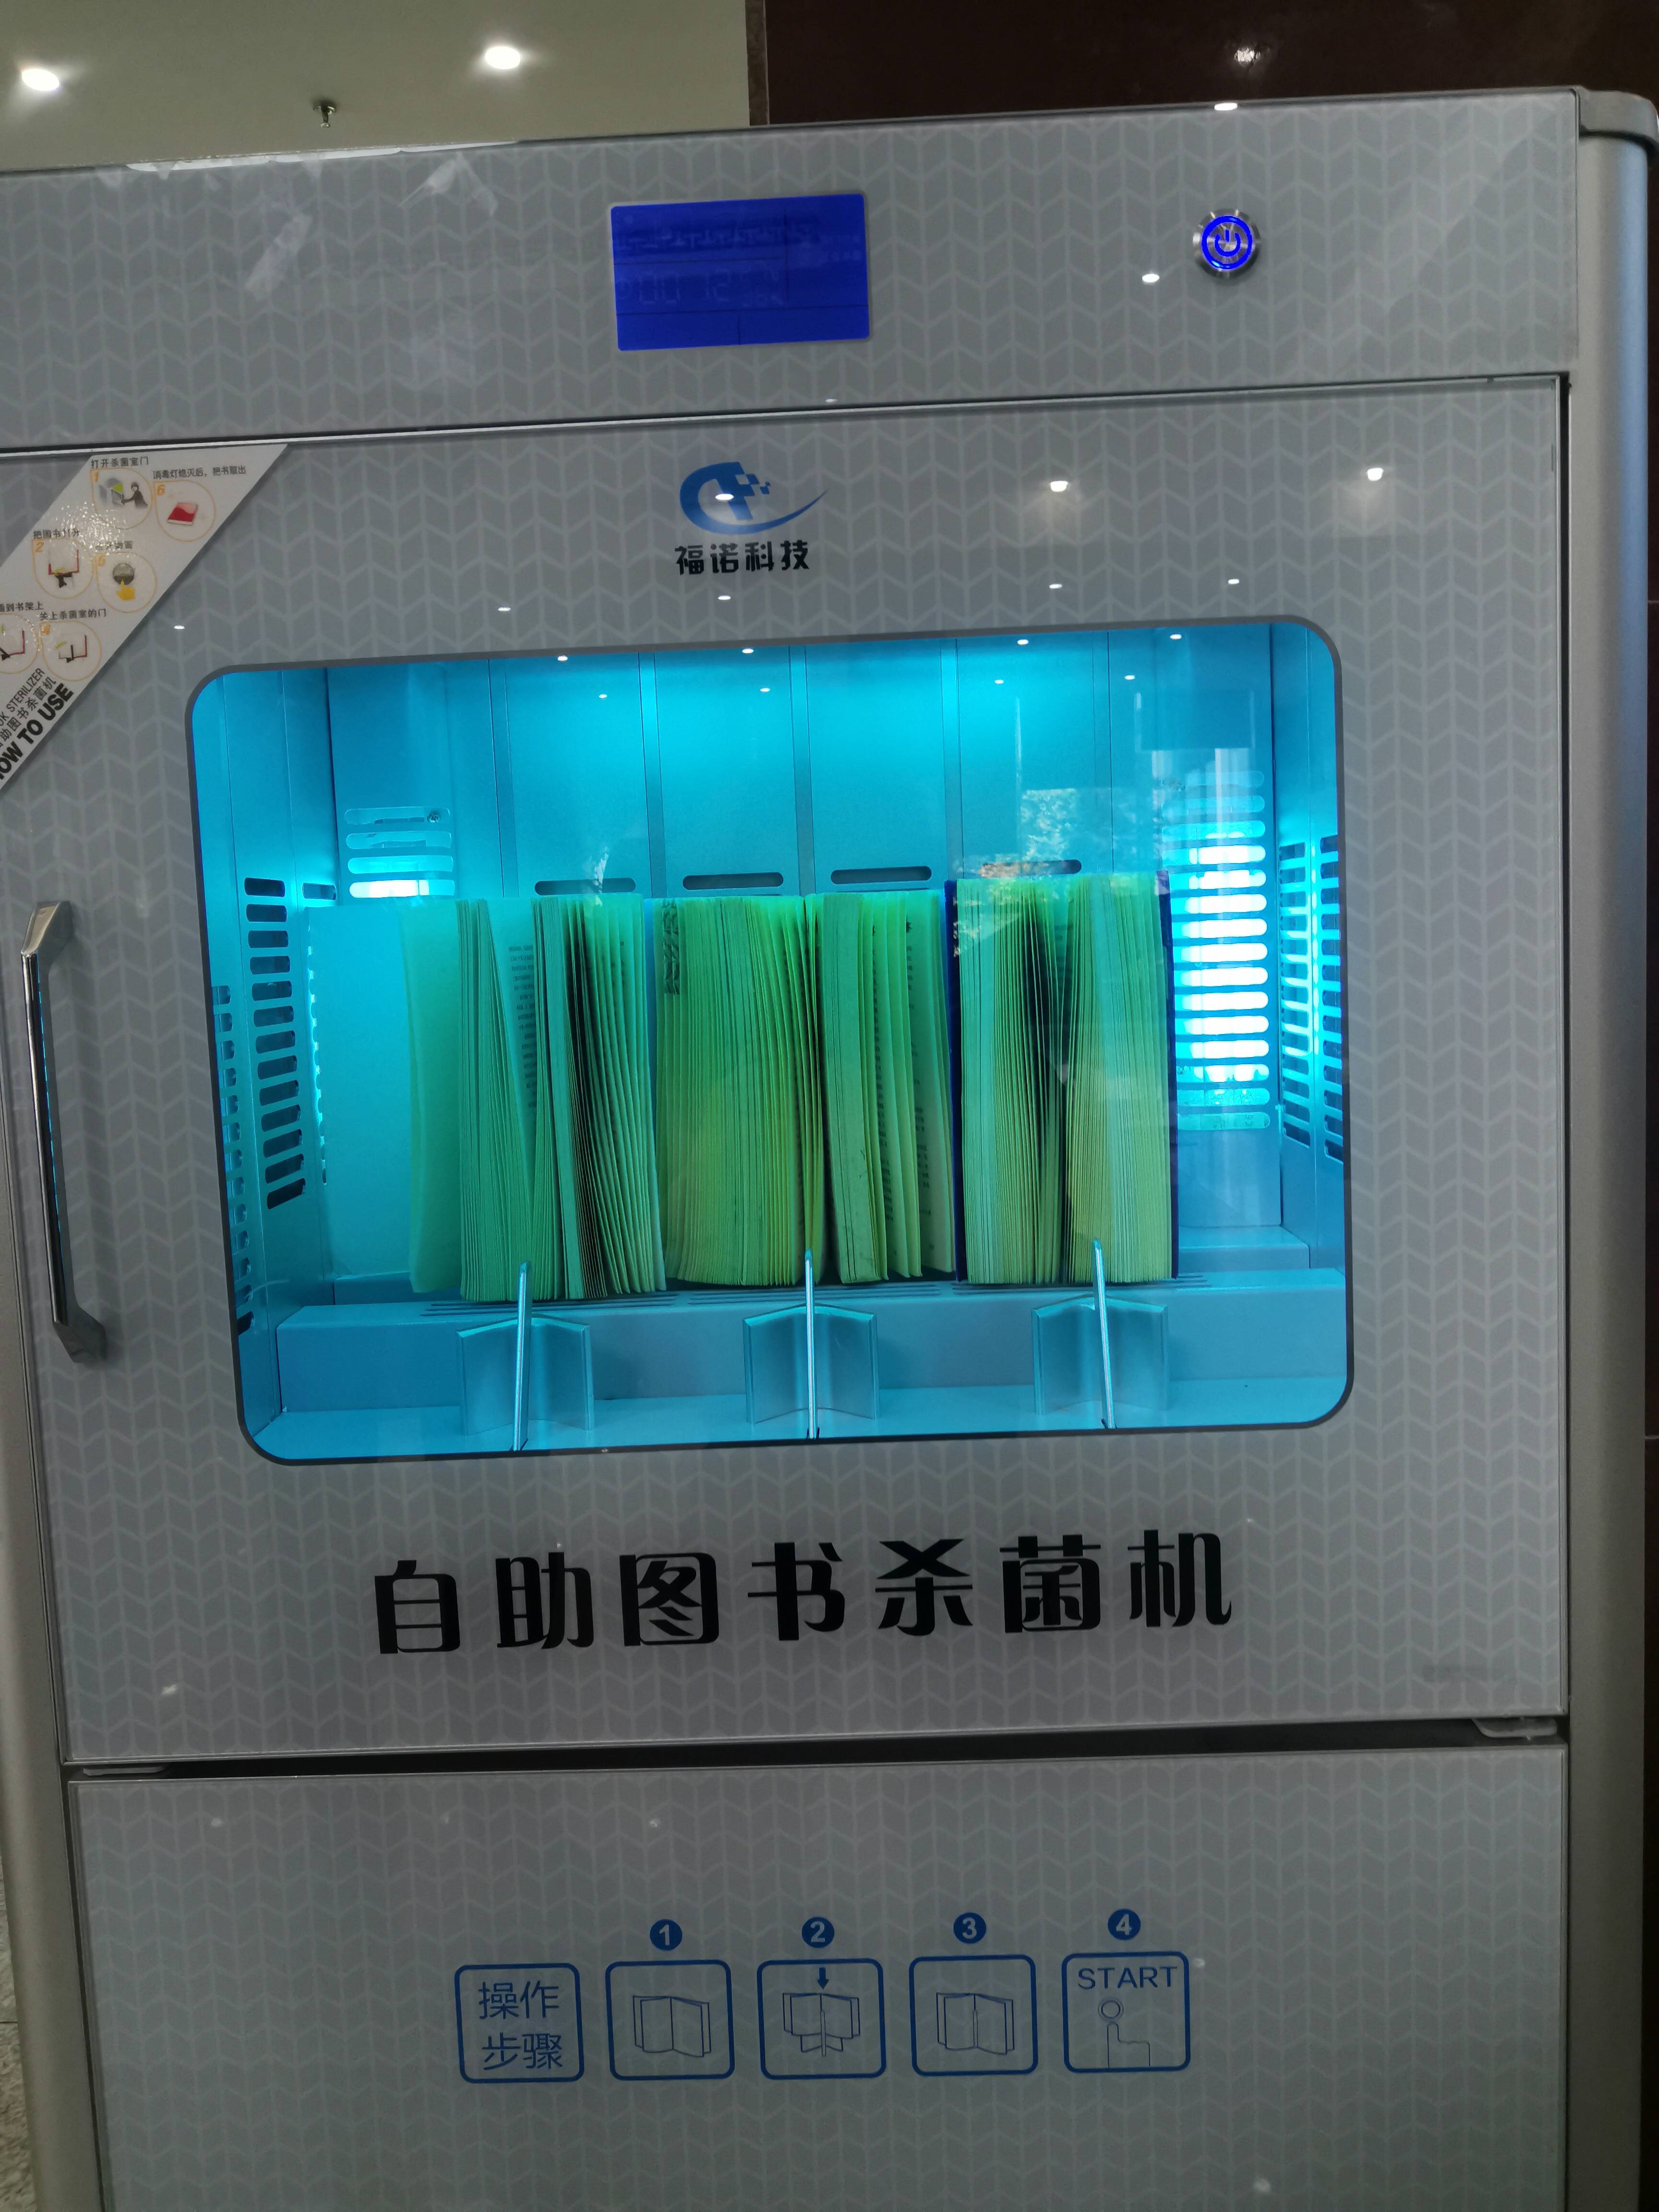 下面我们来看看湖南省图书馆内的这台图书杀菌机:图书杀菌机采用紫外